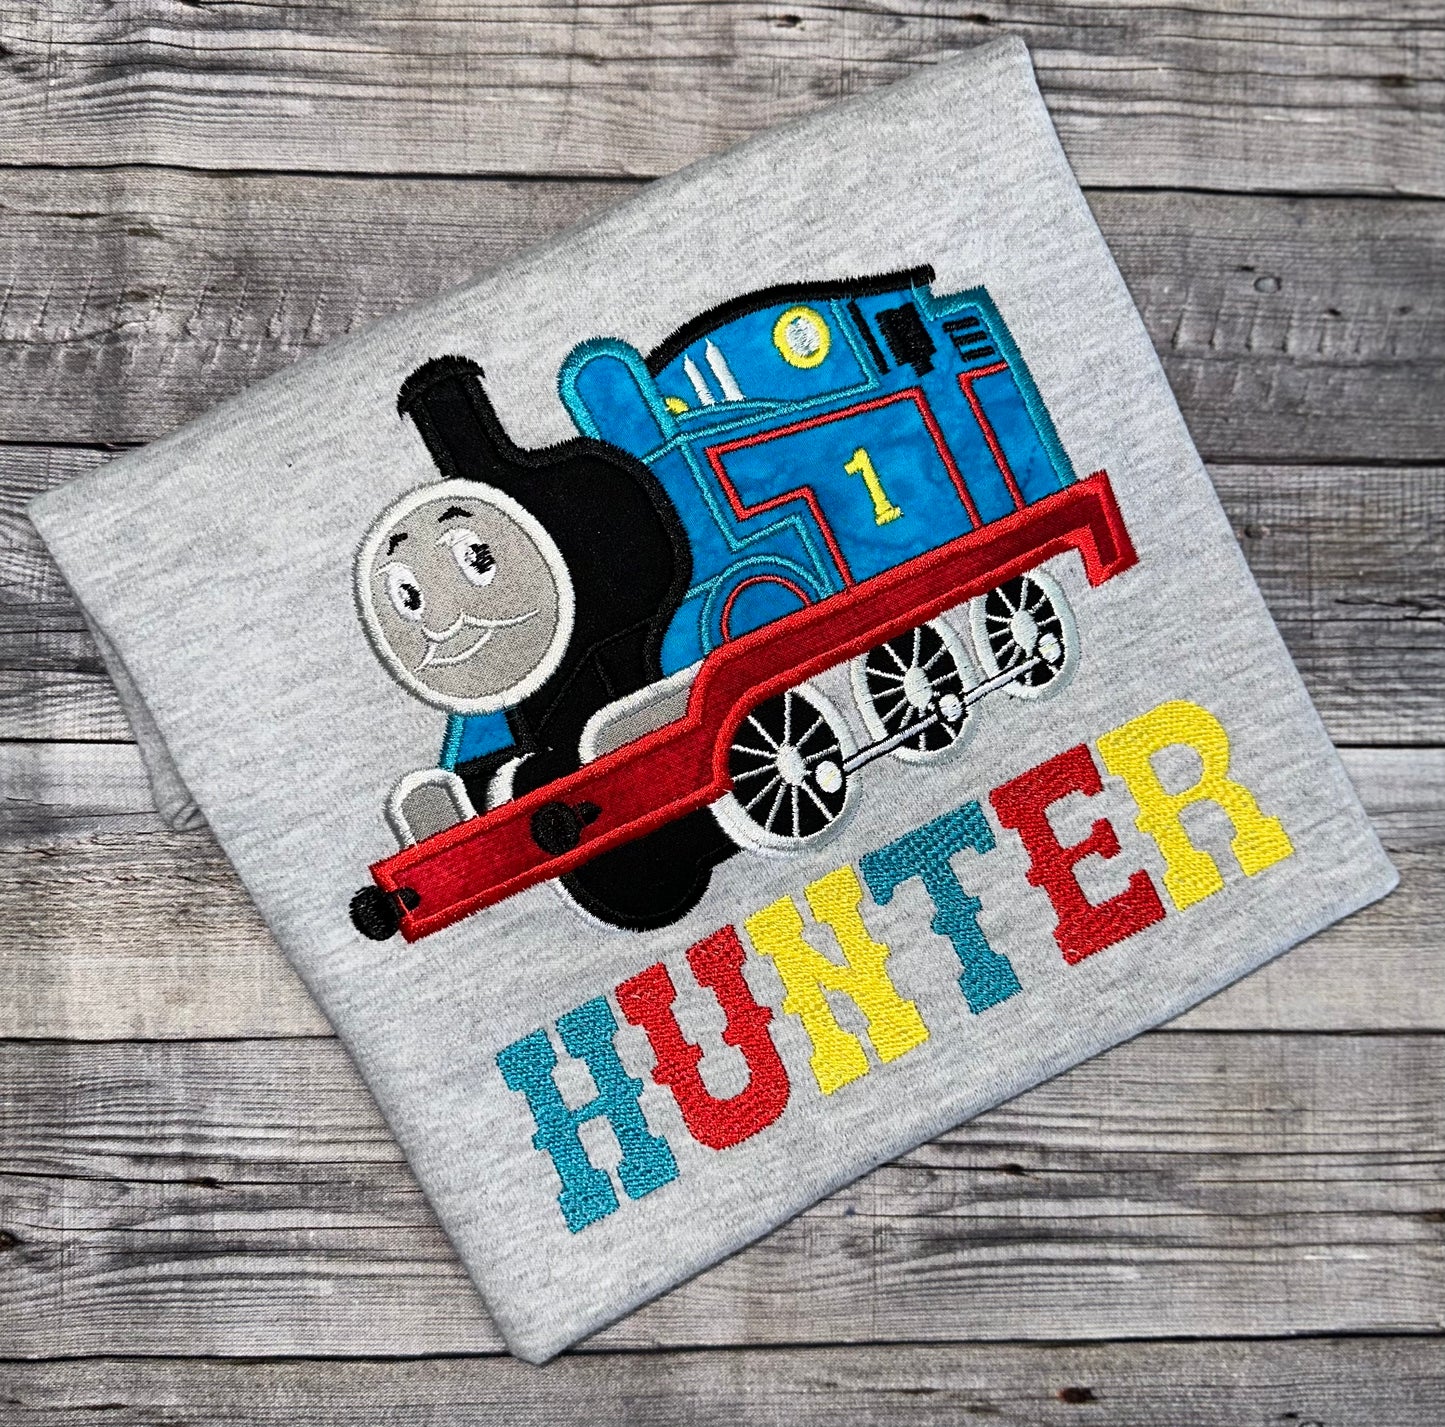 Thomas the train birthday shirt